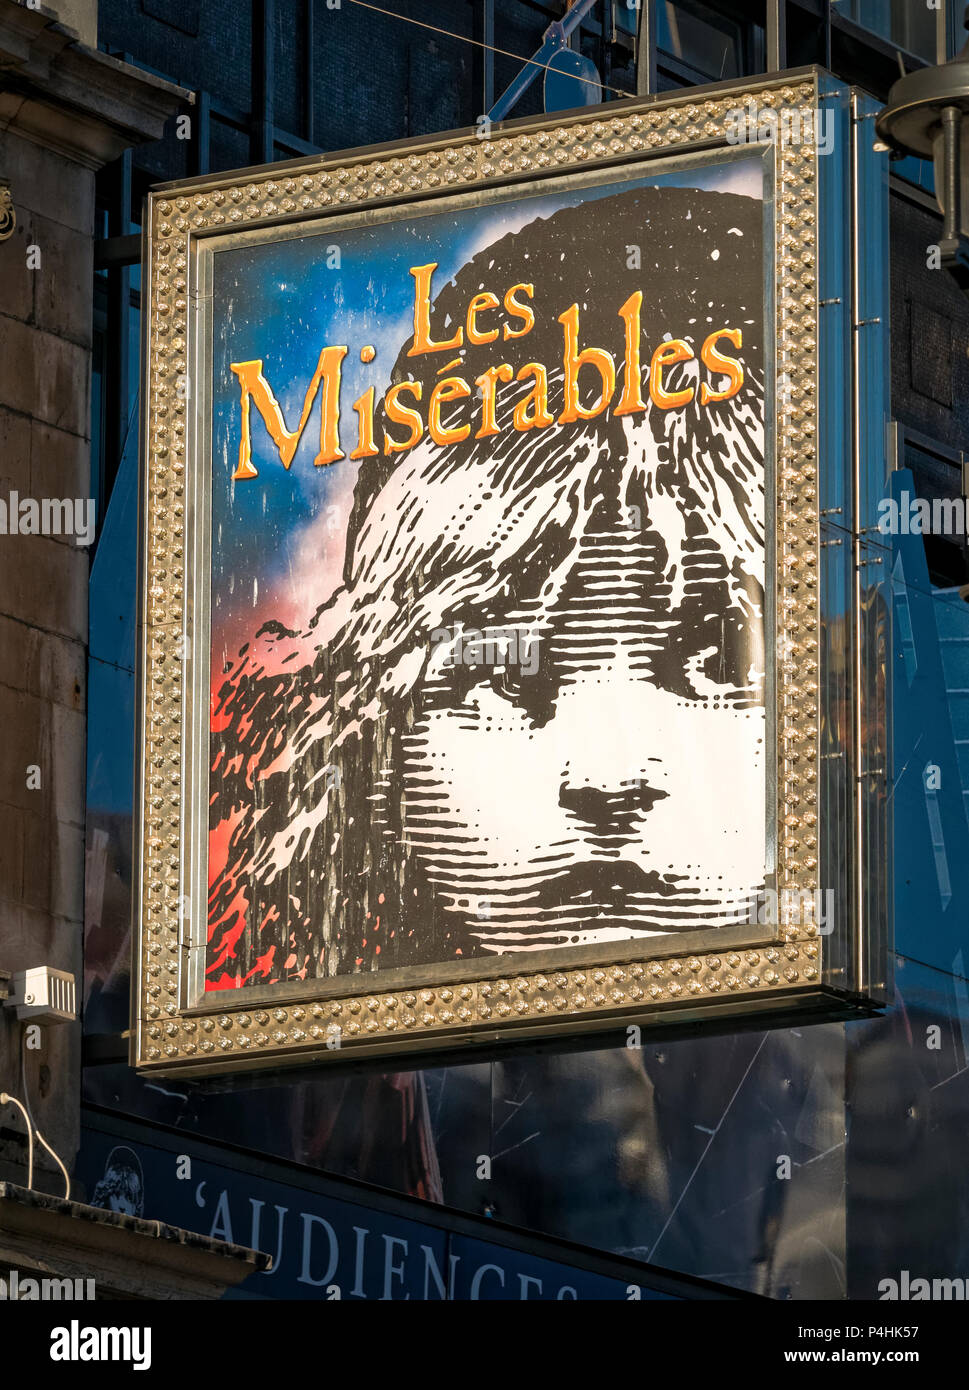 Les Miserables segno sopra un teatro nel west end di Londra, Les Miserables è una fase di lavorazione per la produzione ed anche un film, originariamente un libro scritto in 1862 Foto Stock